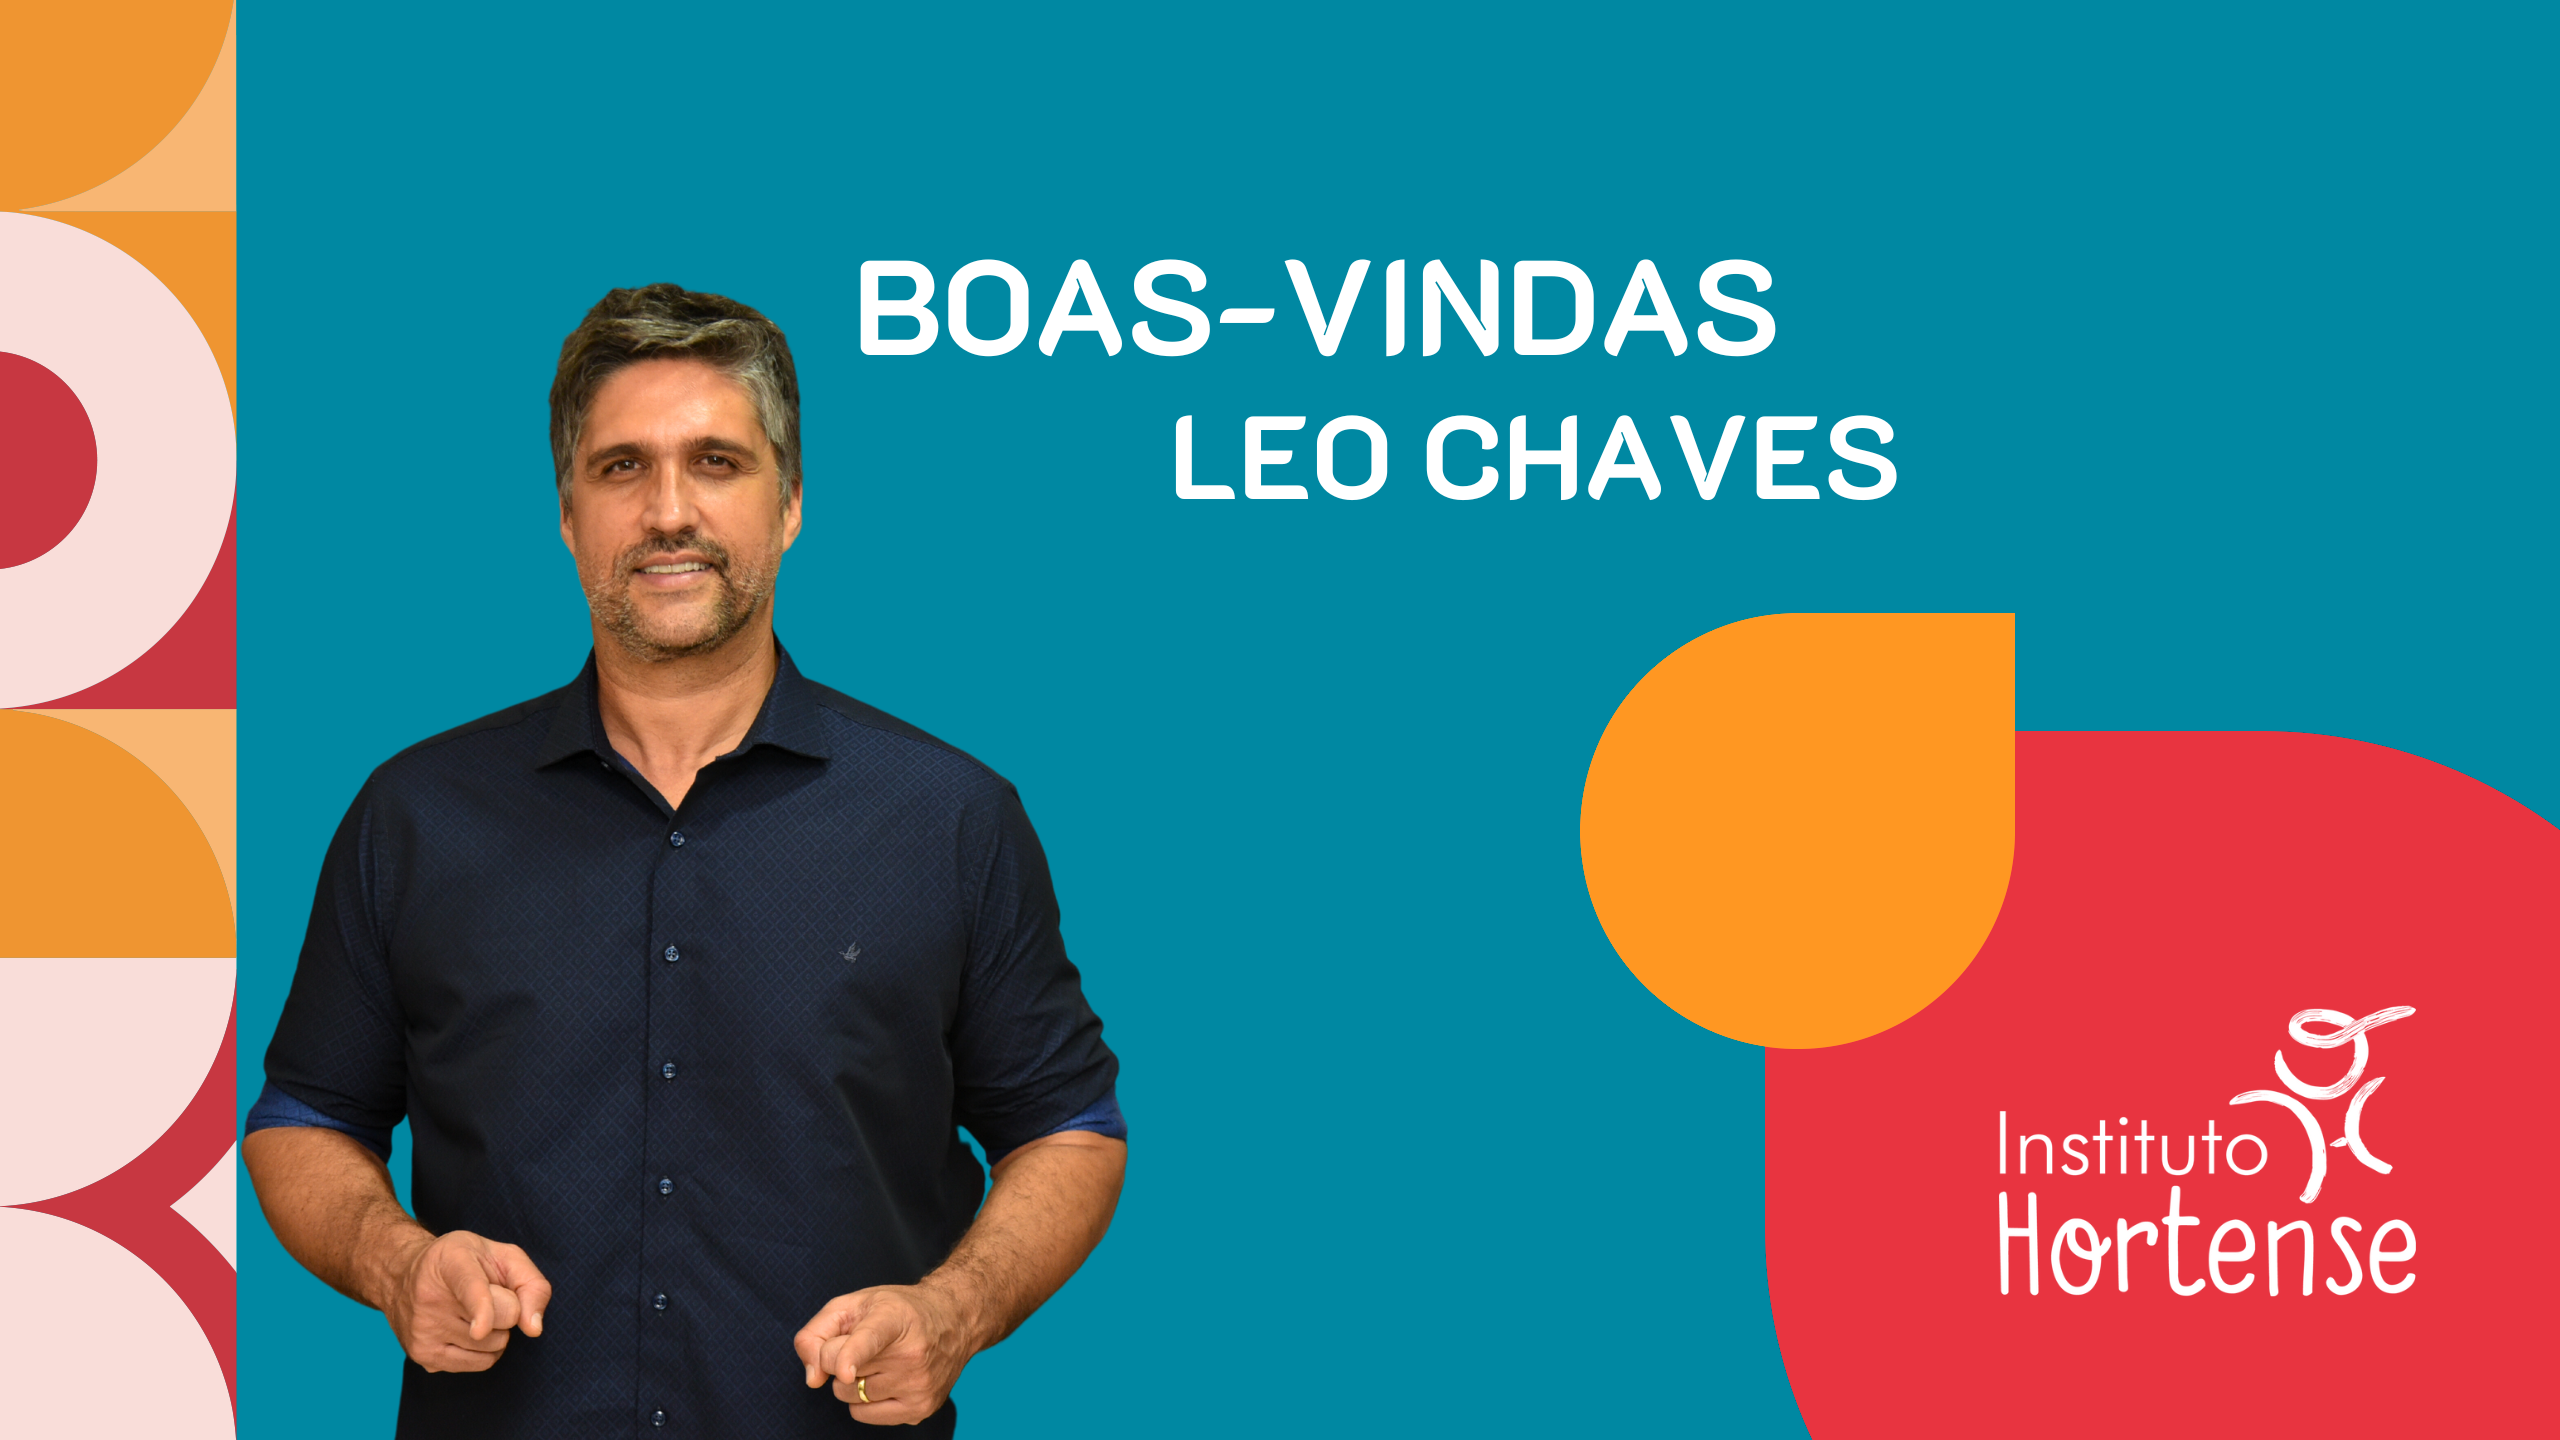 BOAS-VINDAS EAD